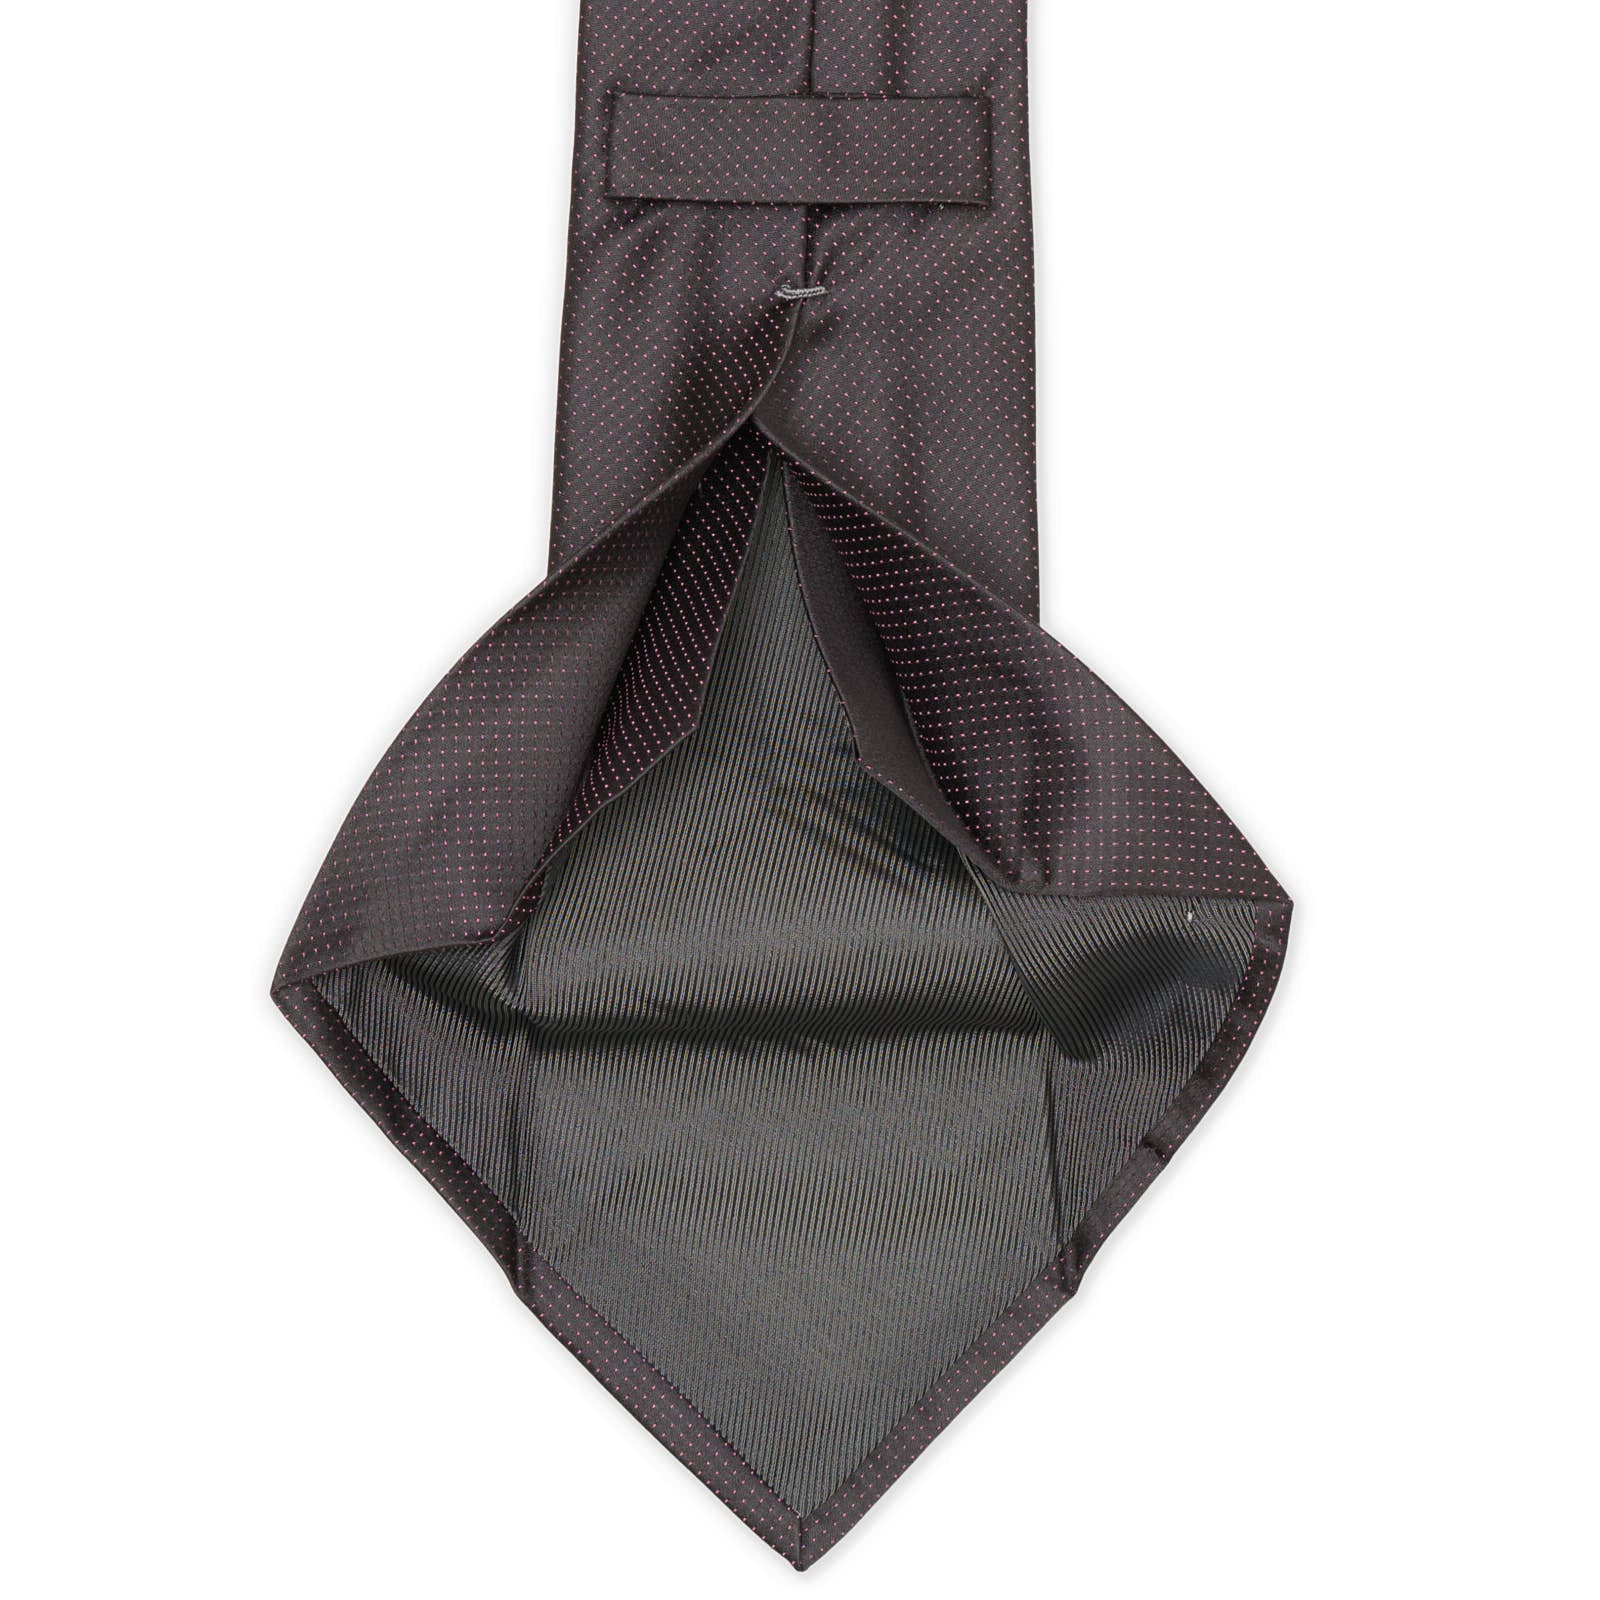 MATTABISCH of for VANNUCCI Satin Gray Micro Seven Fold Silk Tie NEW